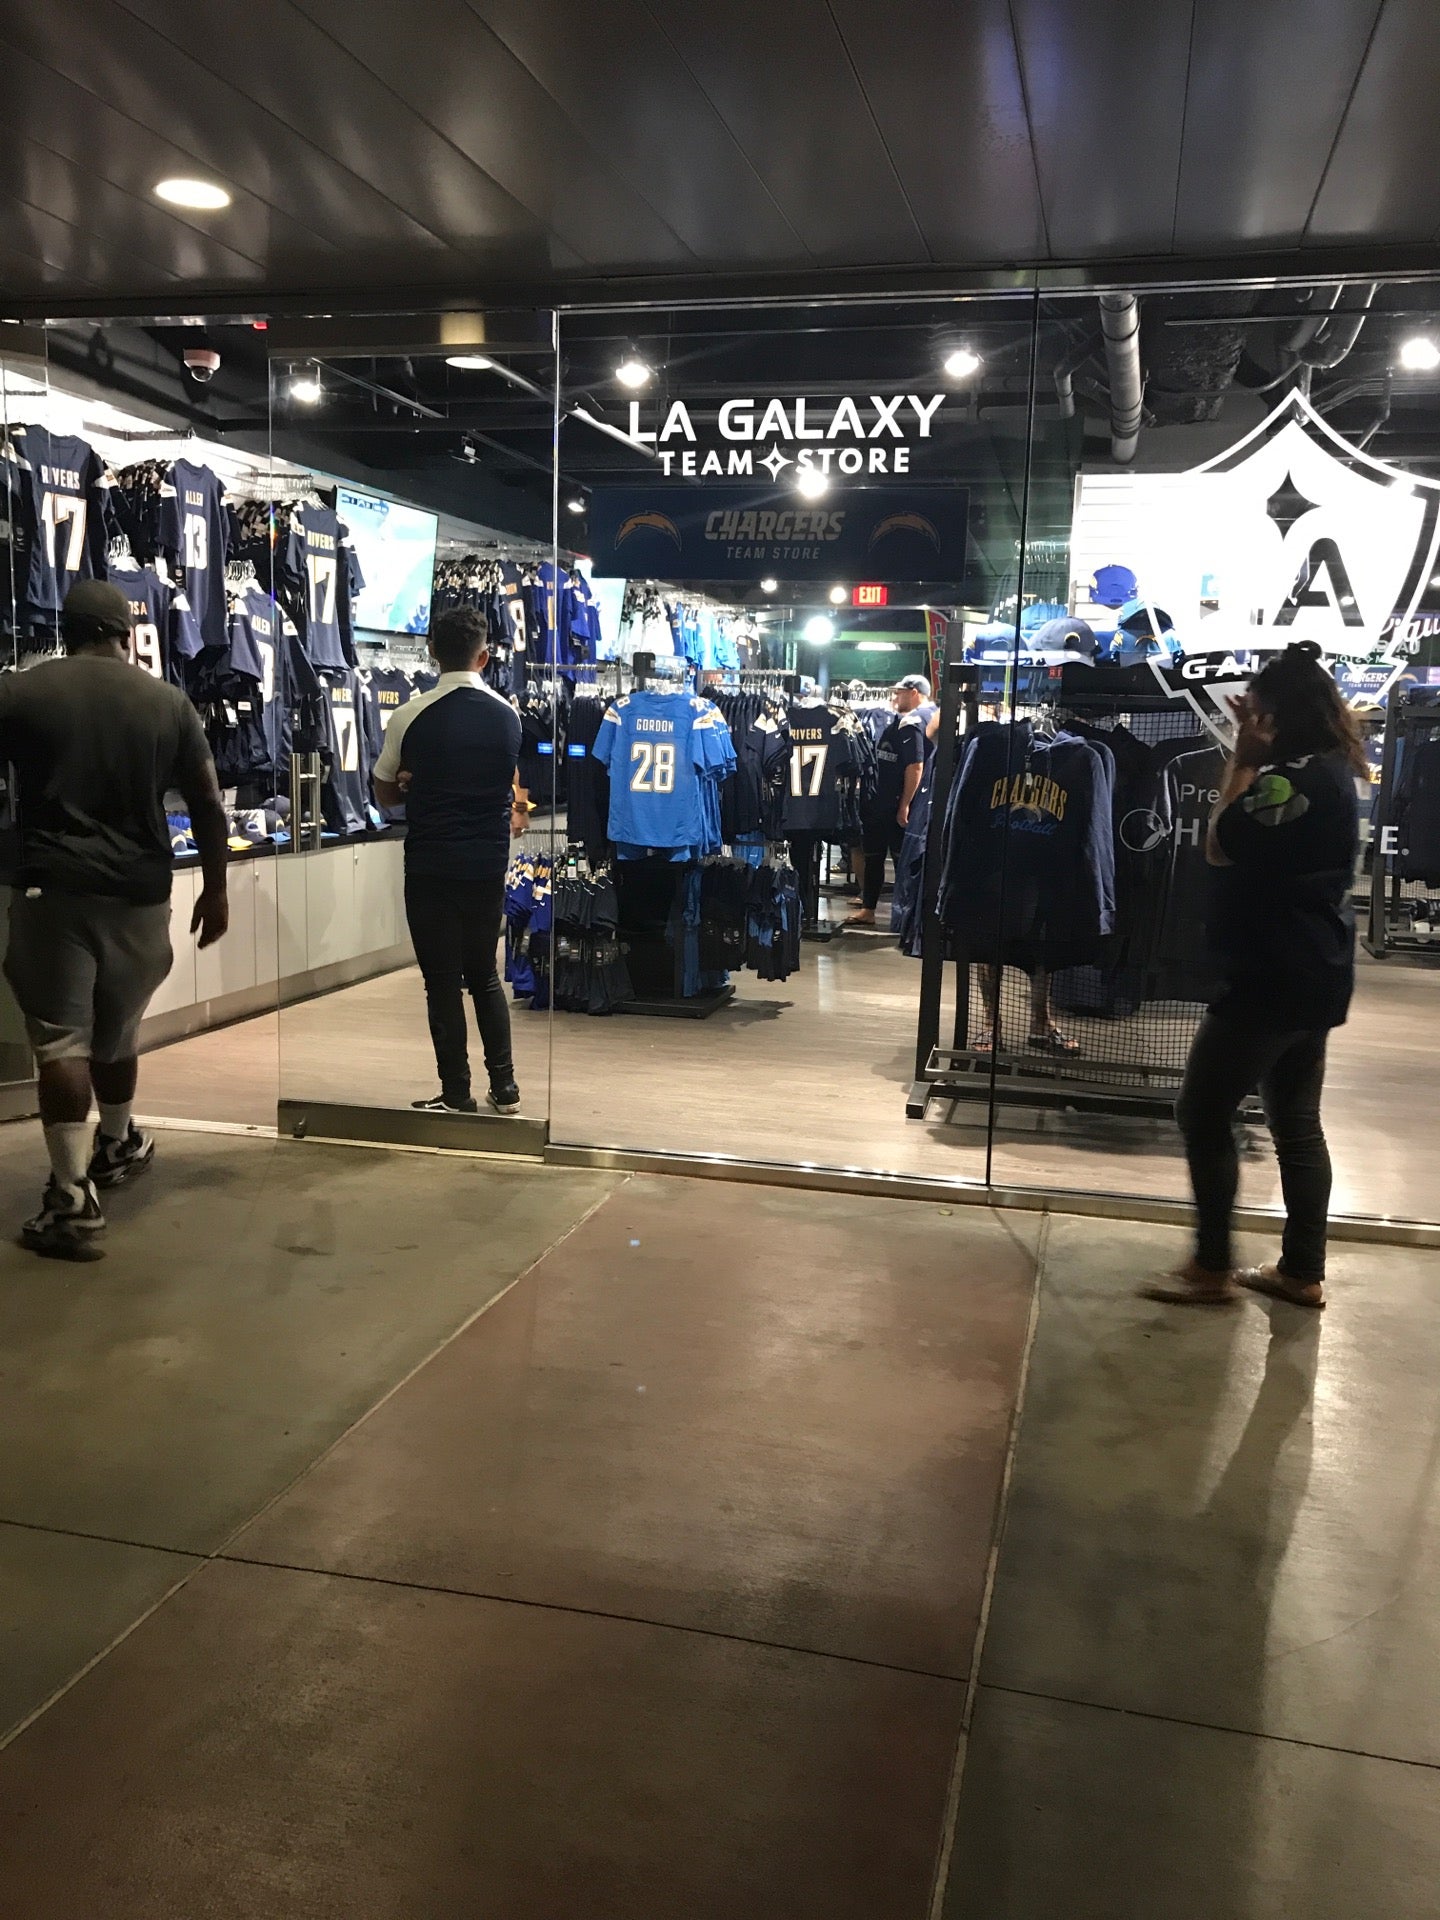 LA Galaxy Team Store, Carson, California